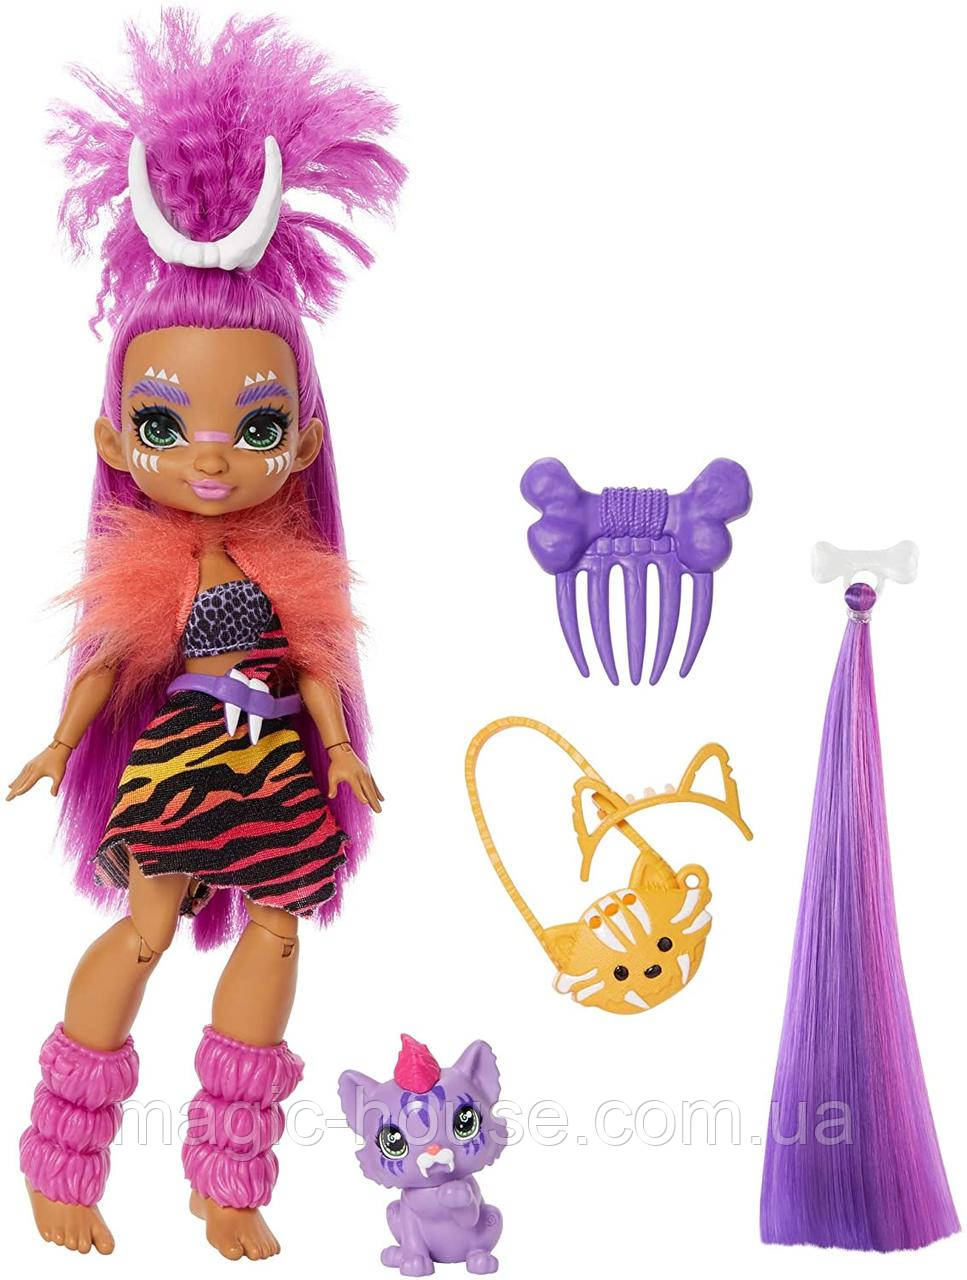 Лялька Роралея і тигреня Ферелл Печерний клуб 25 см Cave Club Roaralai Doll Mattel